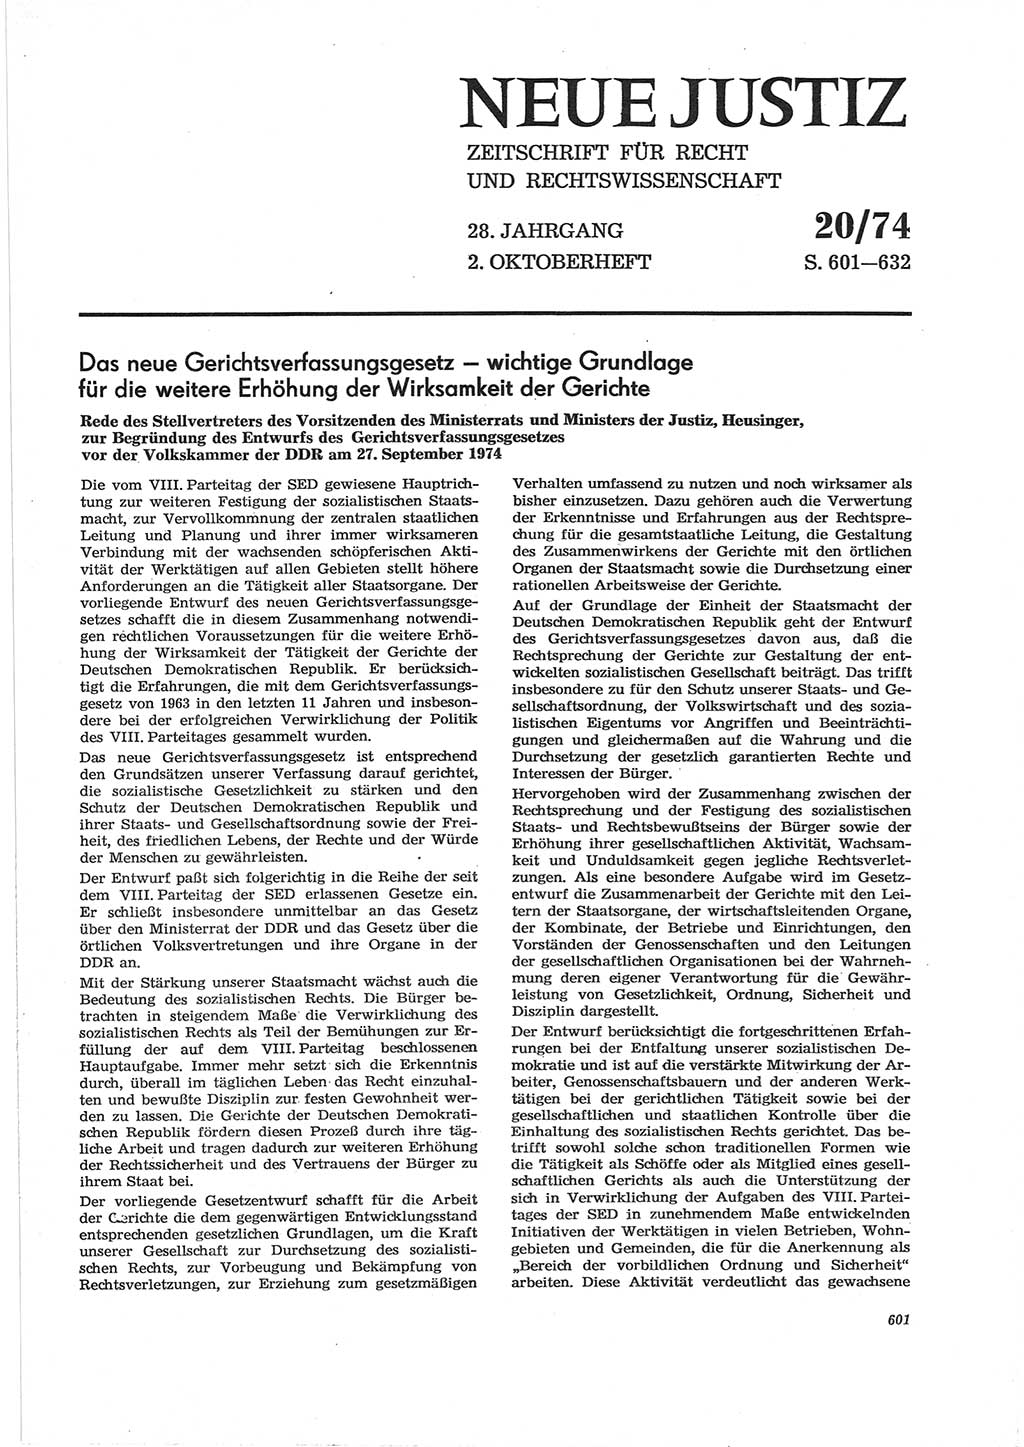 Neue Justiz (NJ), Zeitschrift für Recht und Rechtswissenschaft [Deutsche Demokratische Republik (DDR)], 28. Jahrgang 1974, Seite 601 (NJ DDR 1974, S. 601)